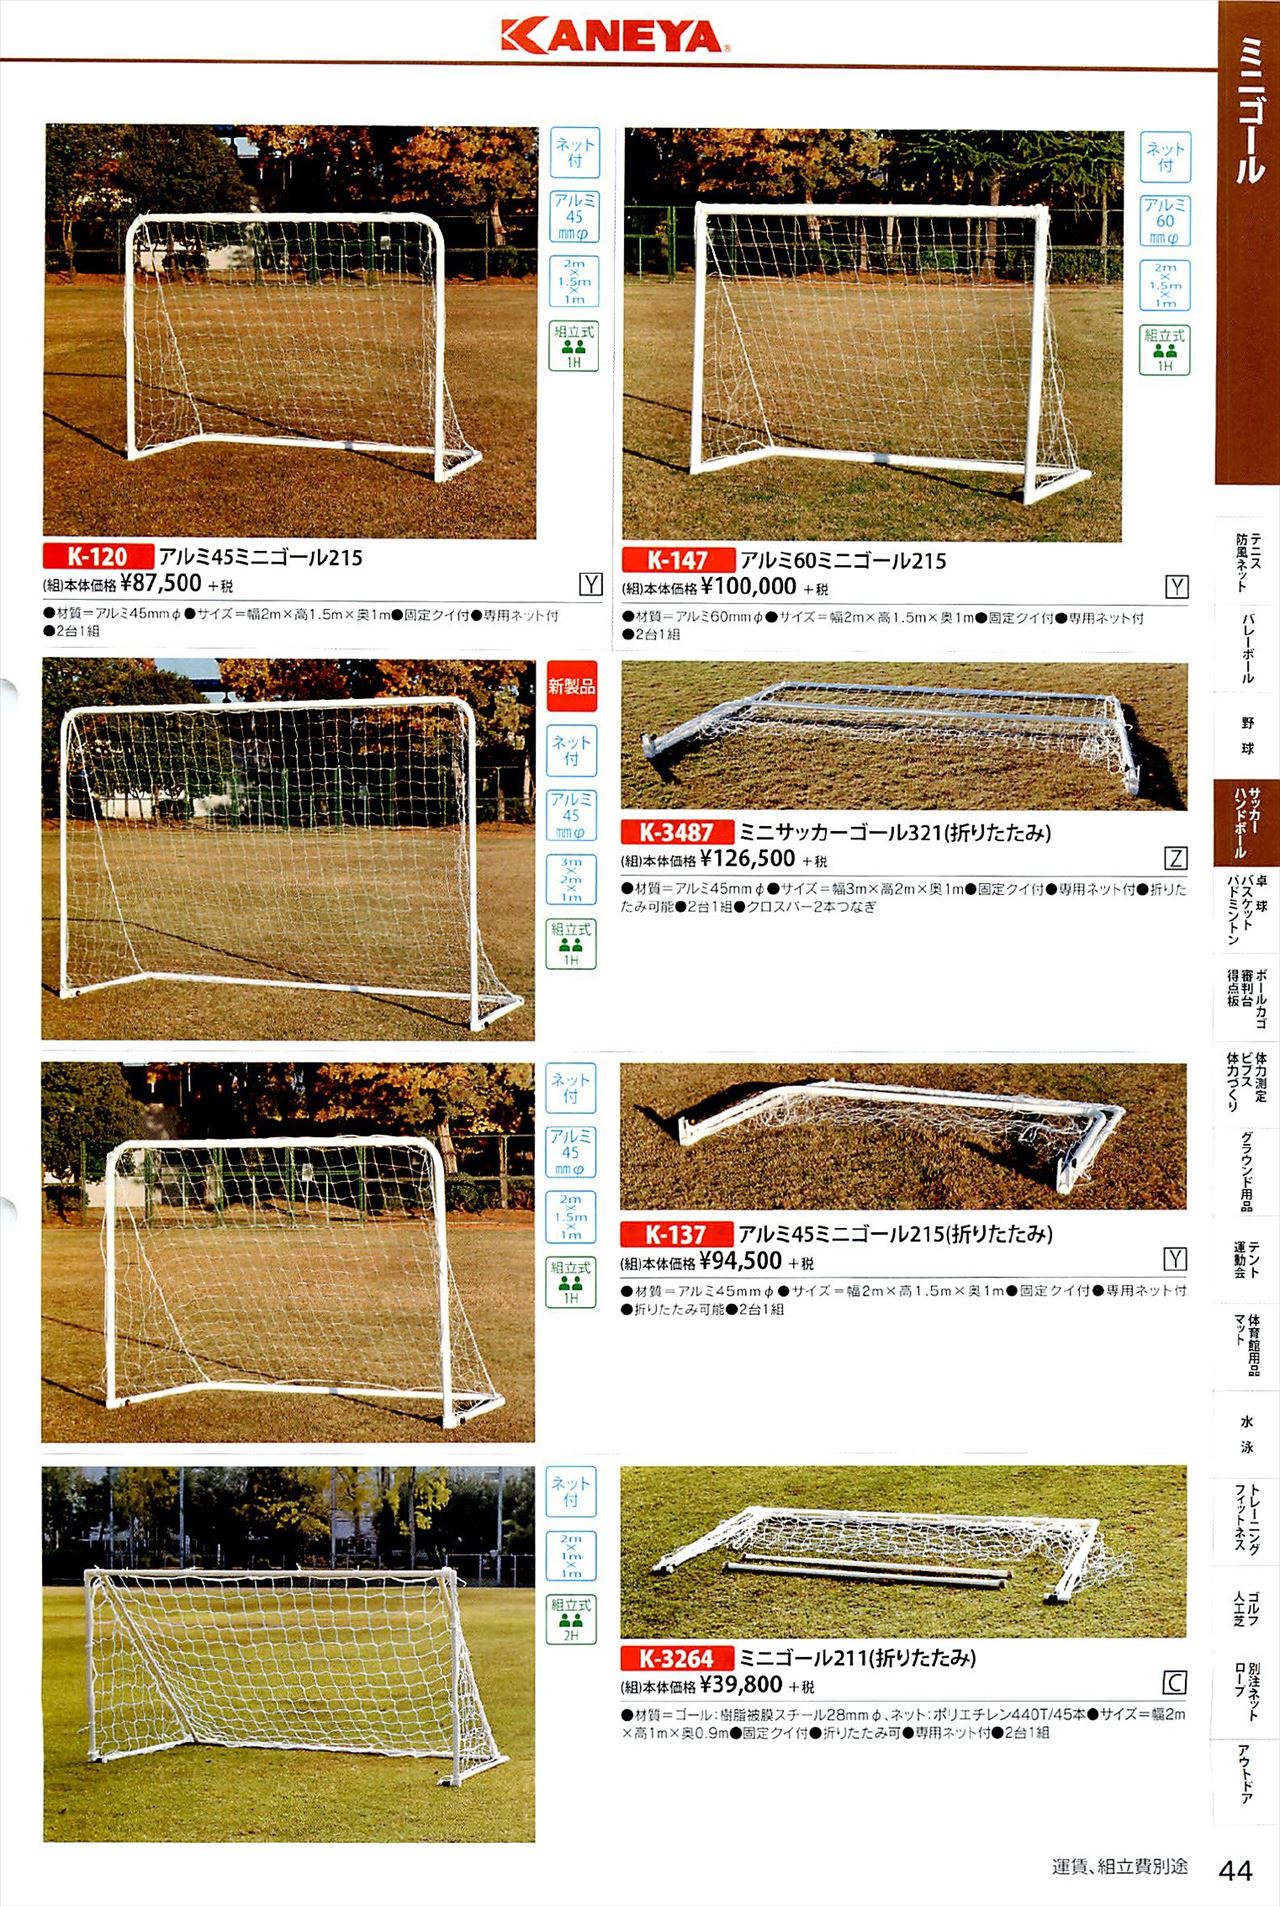 ミニサッカーゴールポストは 鐘屋産業カタログ の ページ44 に掲載されています スポーツメーカーカタログ 目次ページ